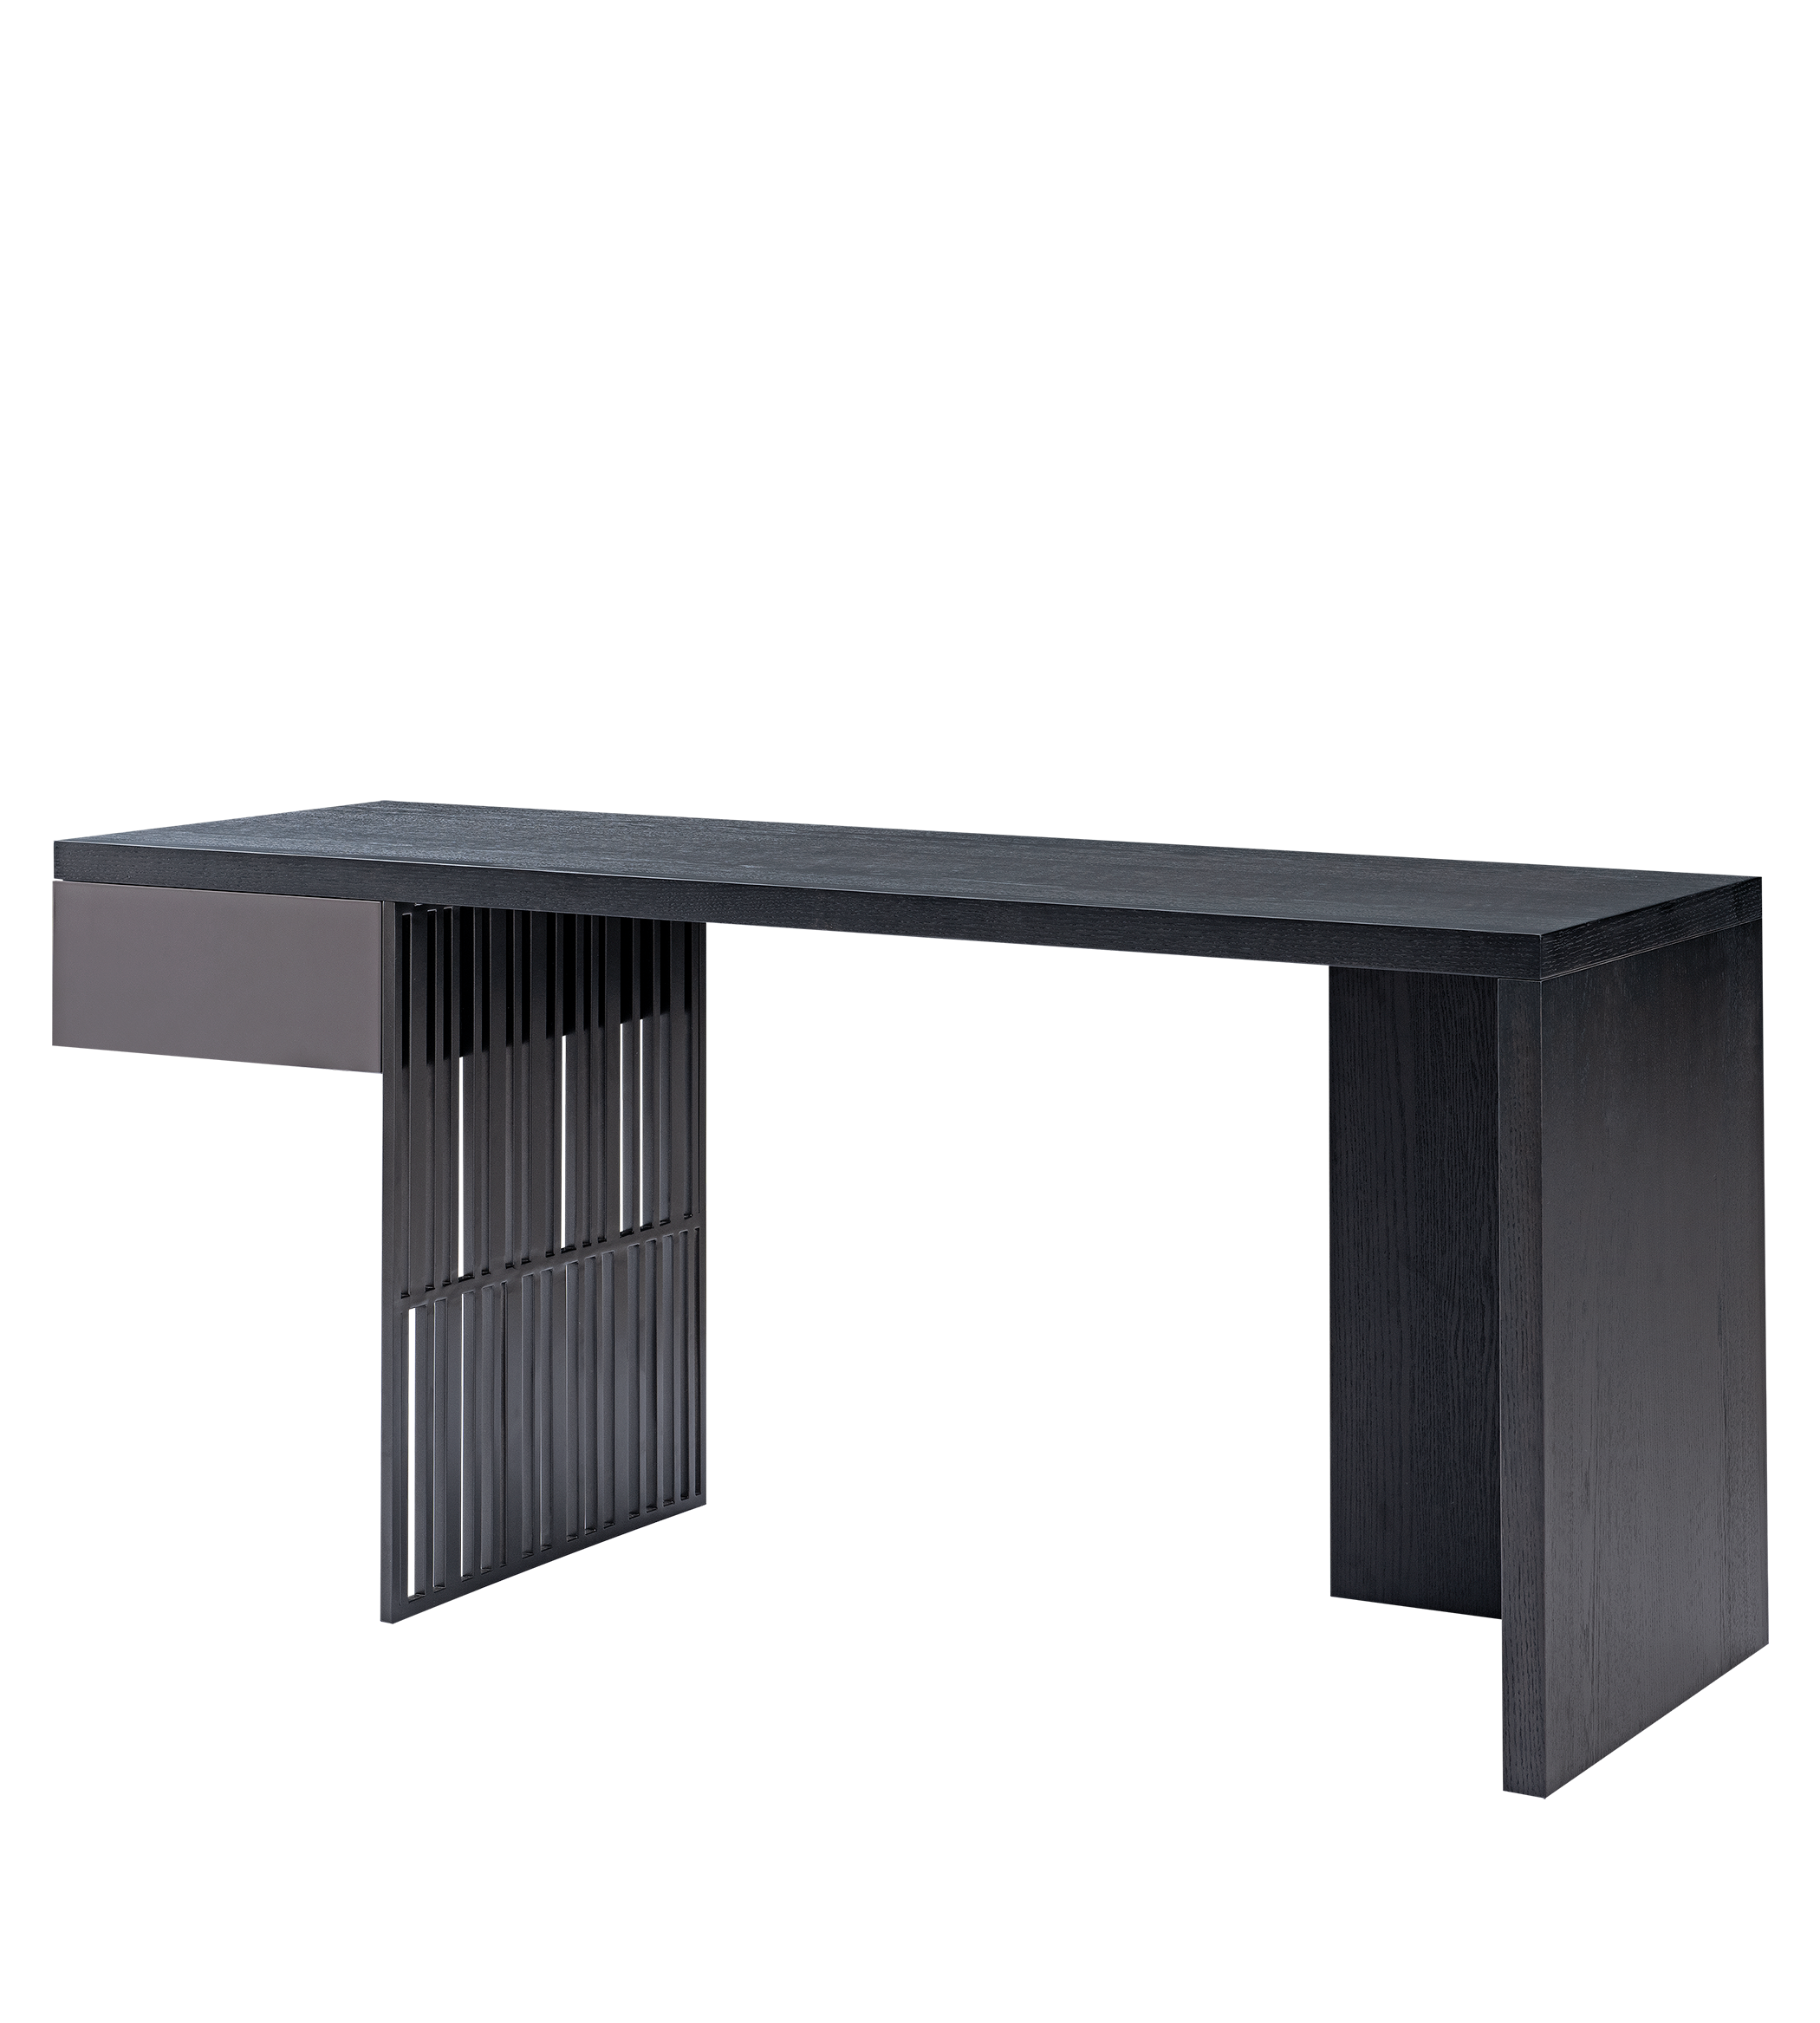 Dresser Desk | Dresser Desk Wholesaler